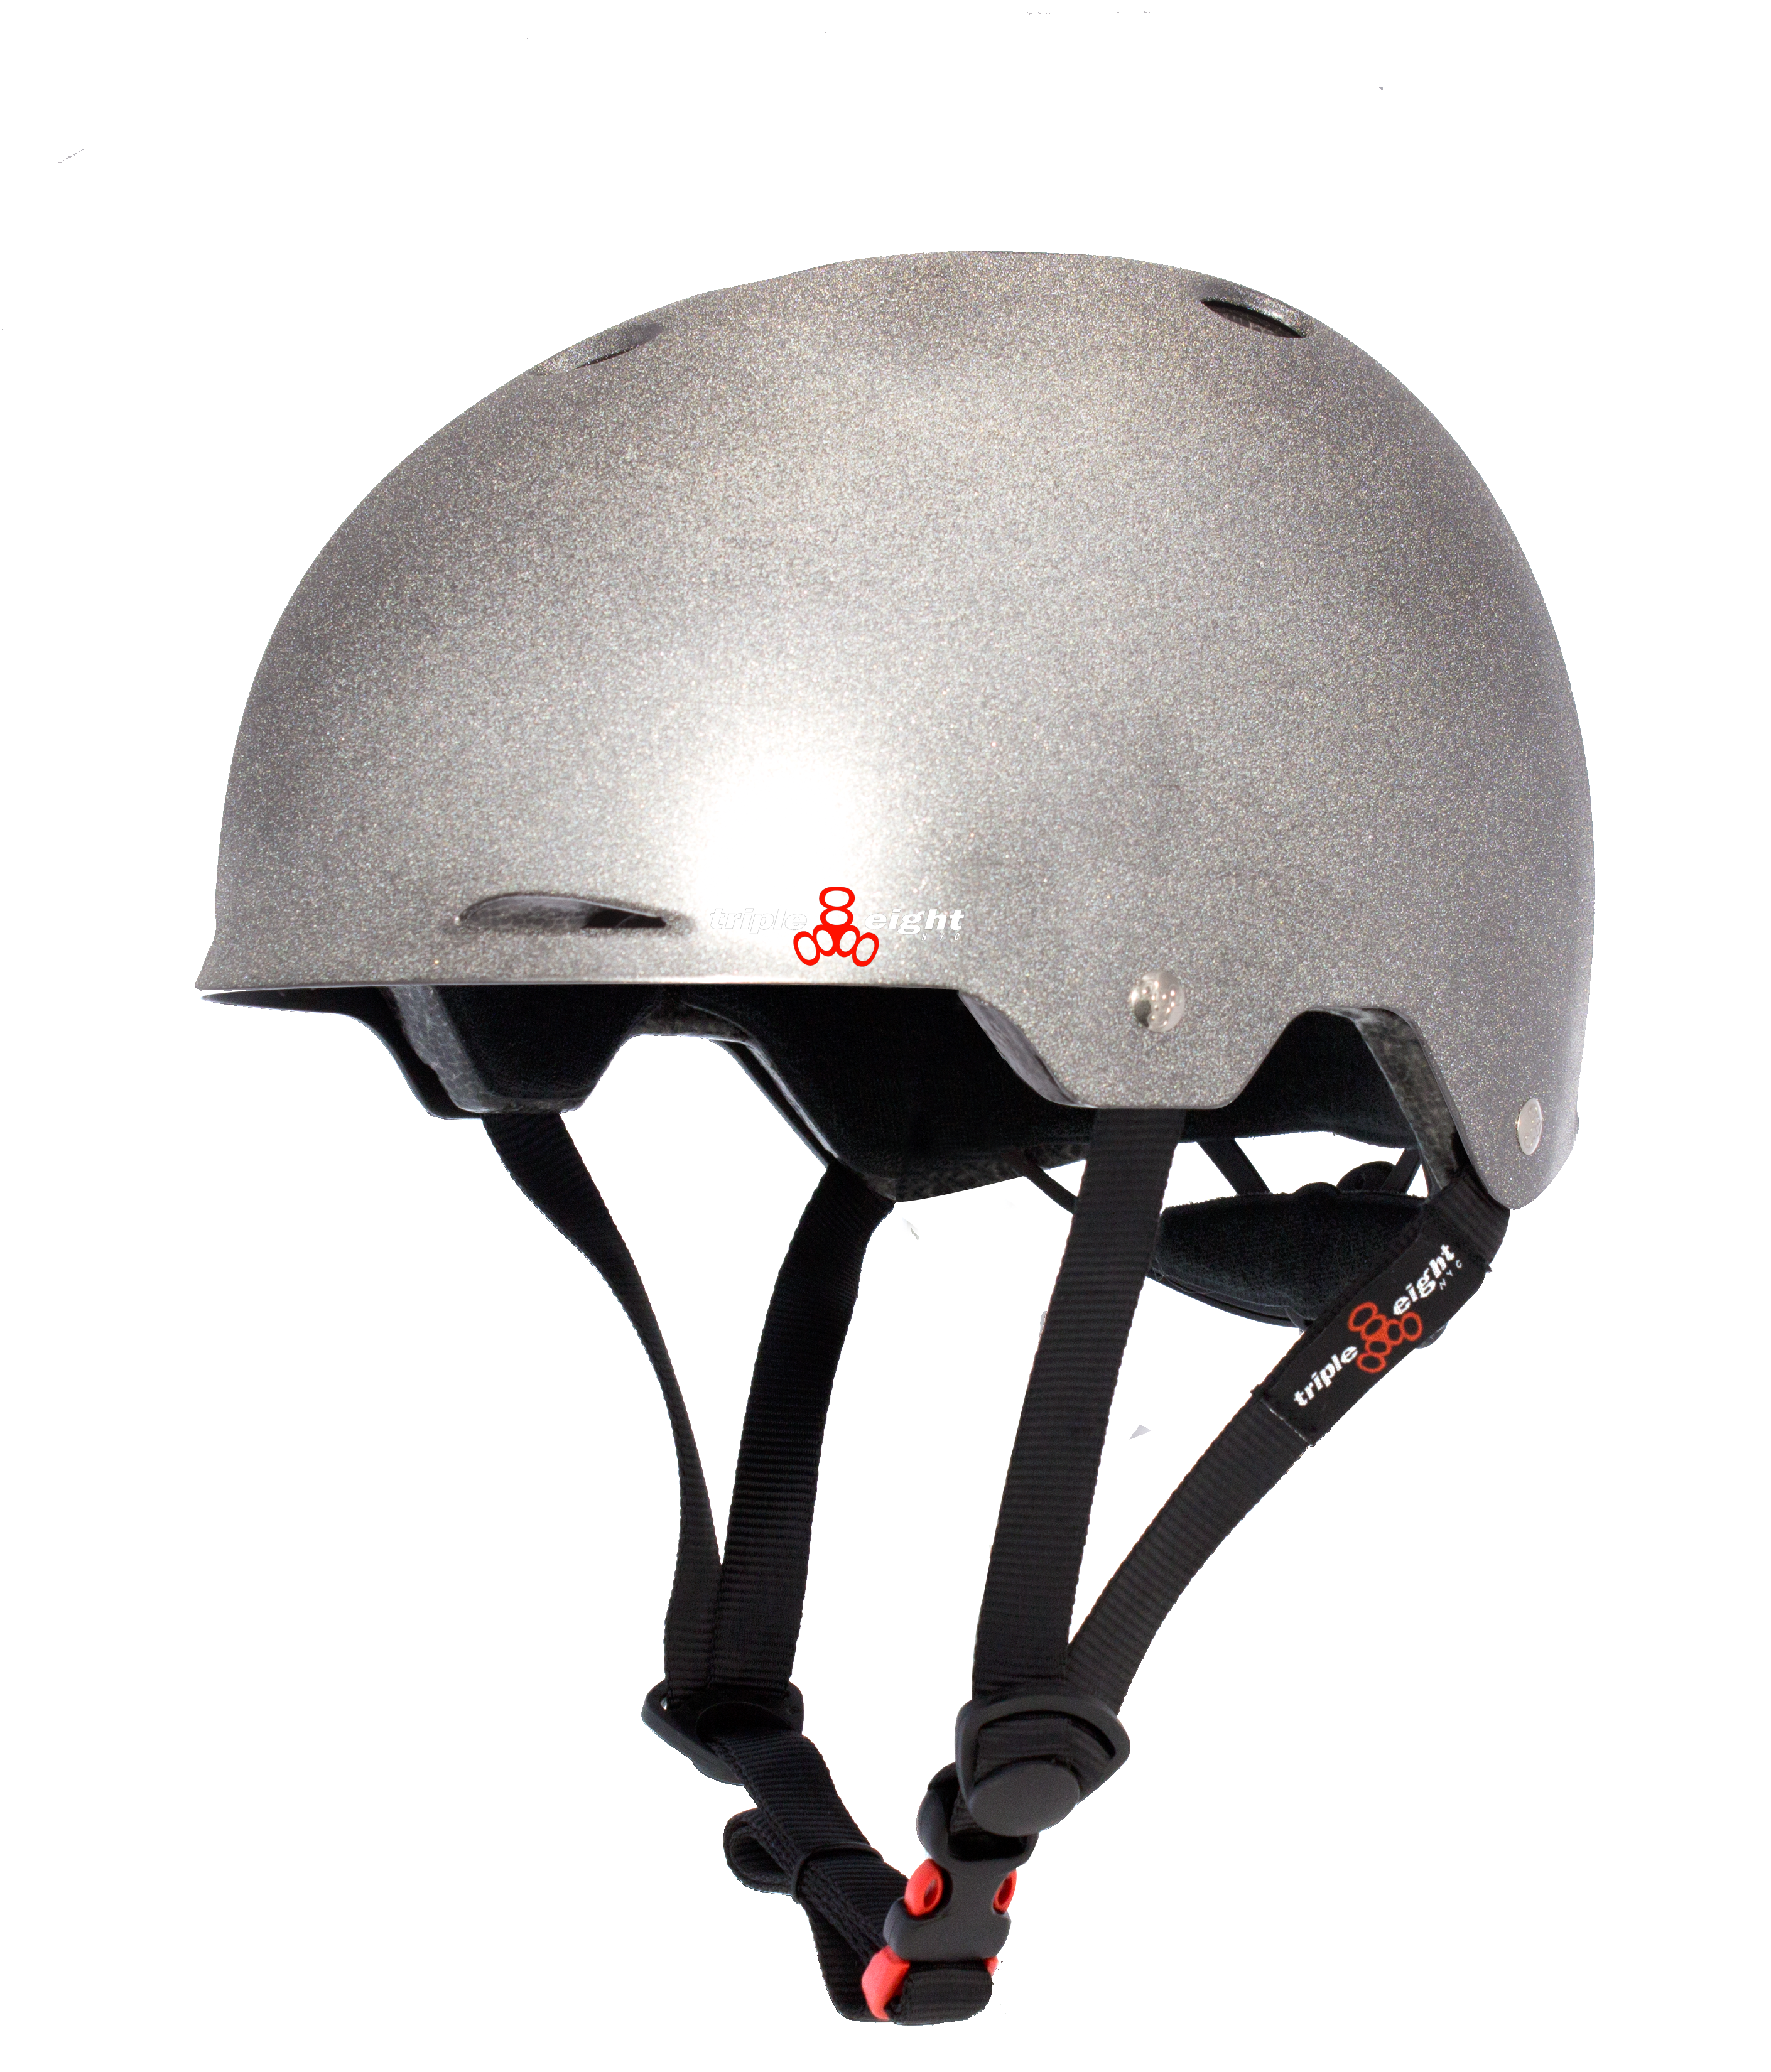 Triple 8 Eight  - Gotham Helmet  - Darklight - Ion Dna